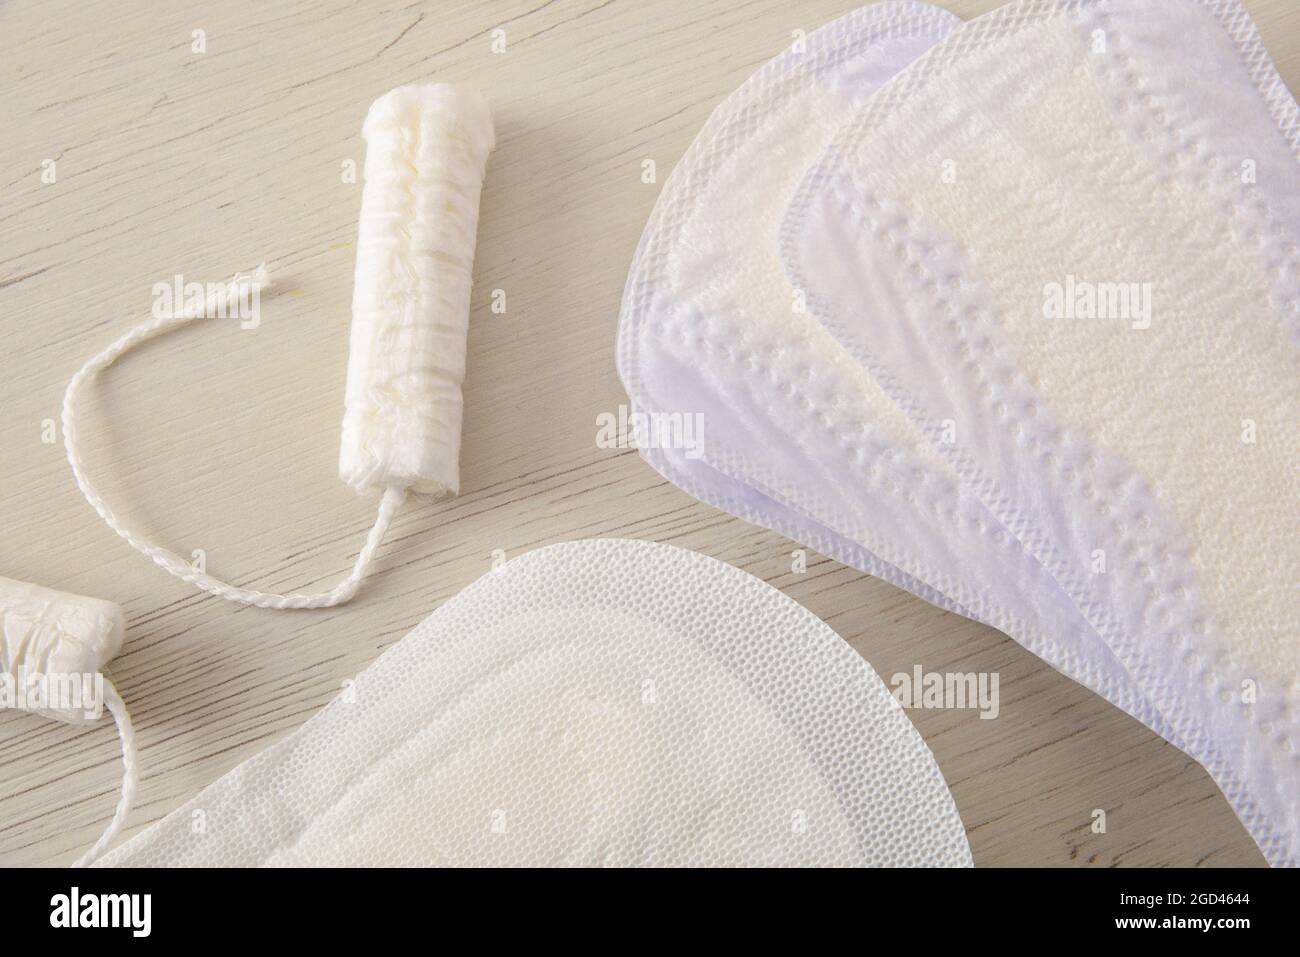 Hintergrund mit weiblichen absorbierenden Protektoren für den Menstruationszyklus. Pantiliner, Serviette und Tampon auf weißem Holztisch. Draufsicht. Horizontal komposit Stockfoto